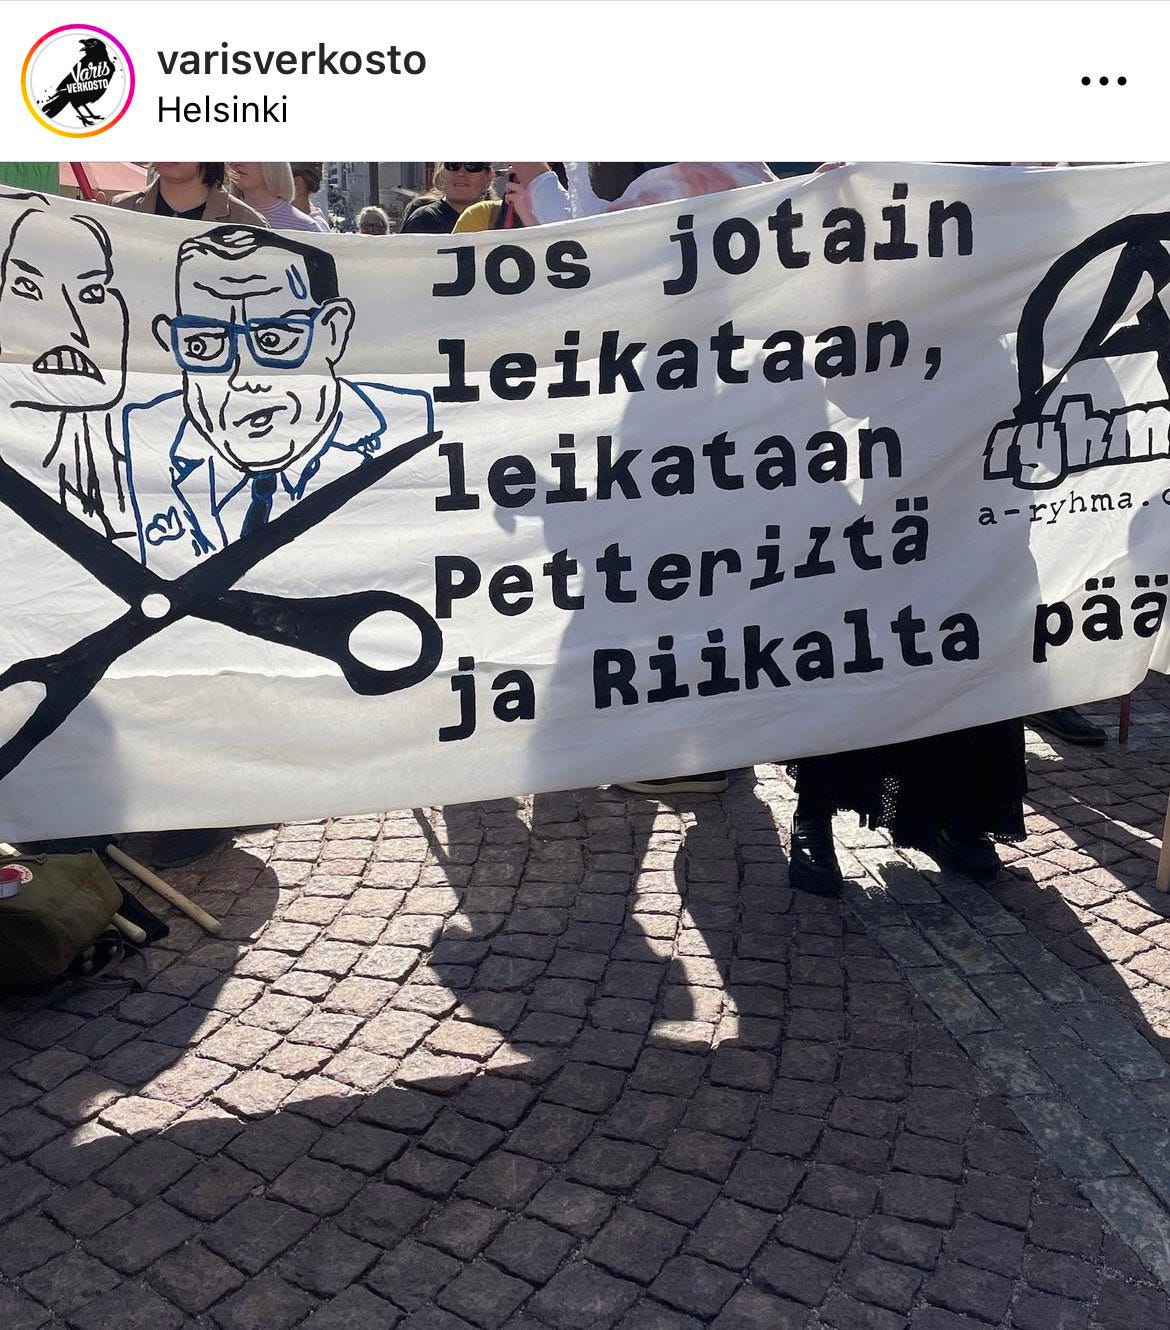 Terroristinen ja vasemmistolainen anarkistiryhmittymä “Varisverkosto” jakoi Instagramiin kuvia äärimmäistä terrorismia tukevasta banderollista.